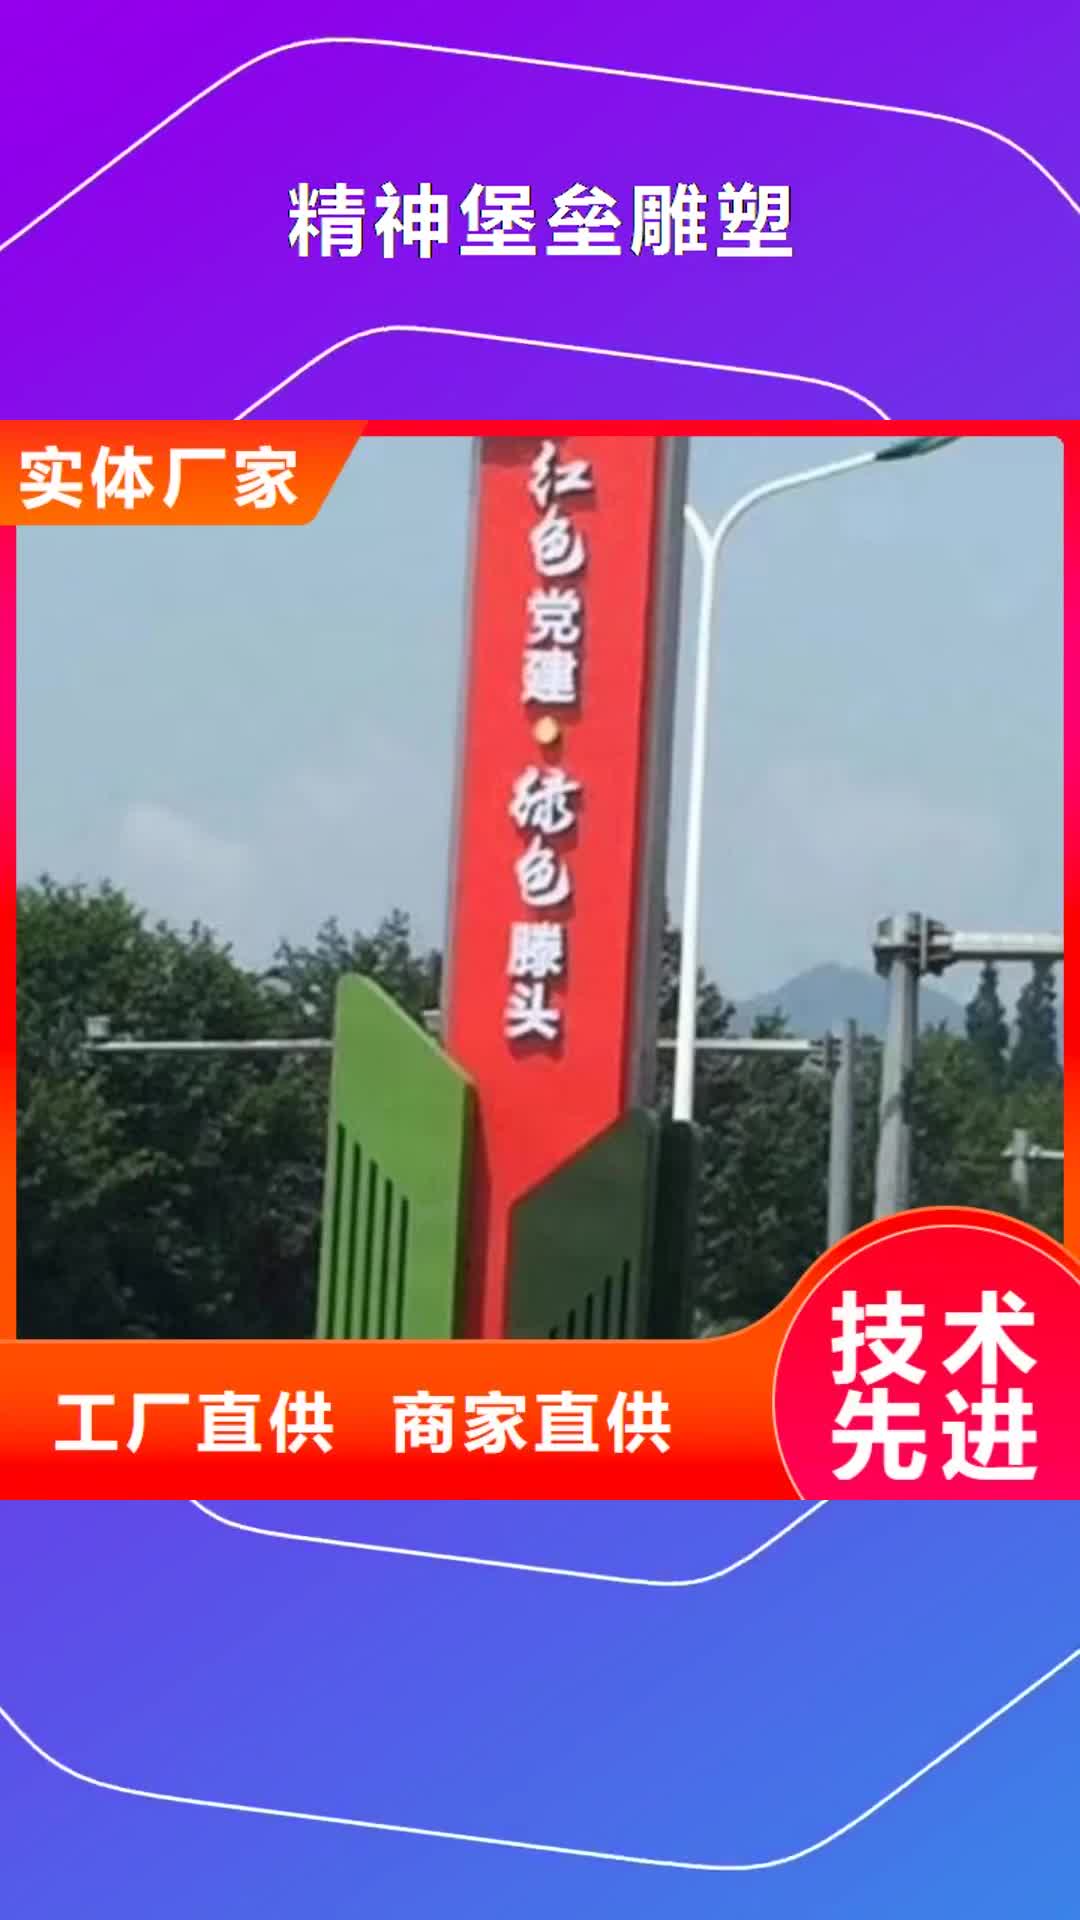 香港 精神堡垒雕塑【新农村党建标牌】标准工艺